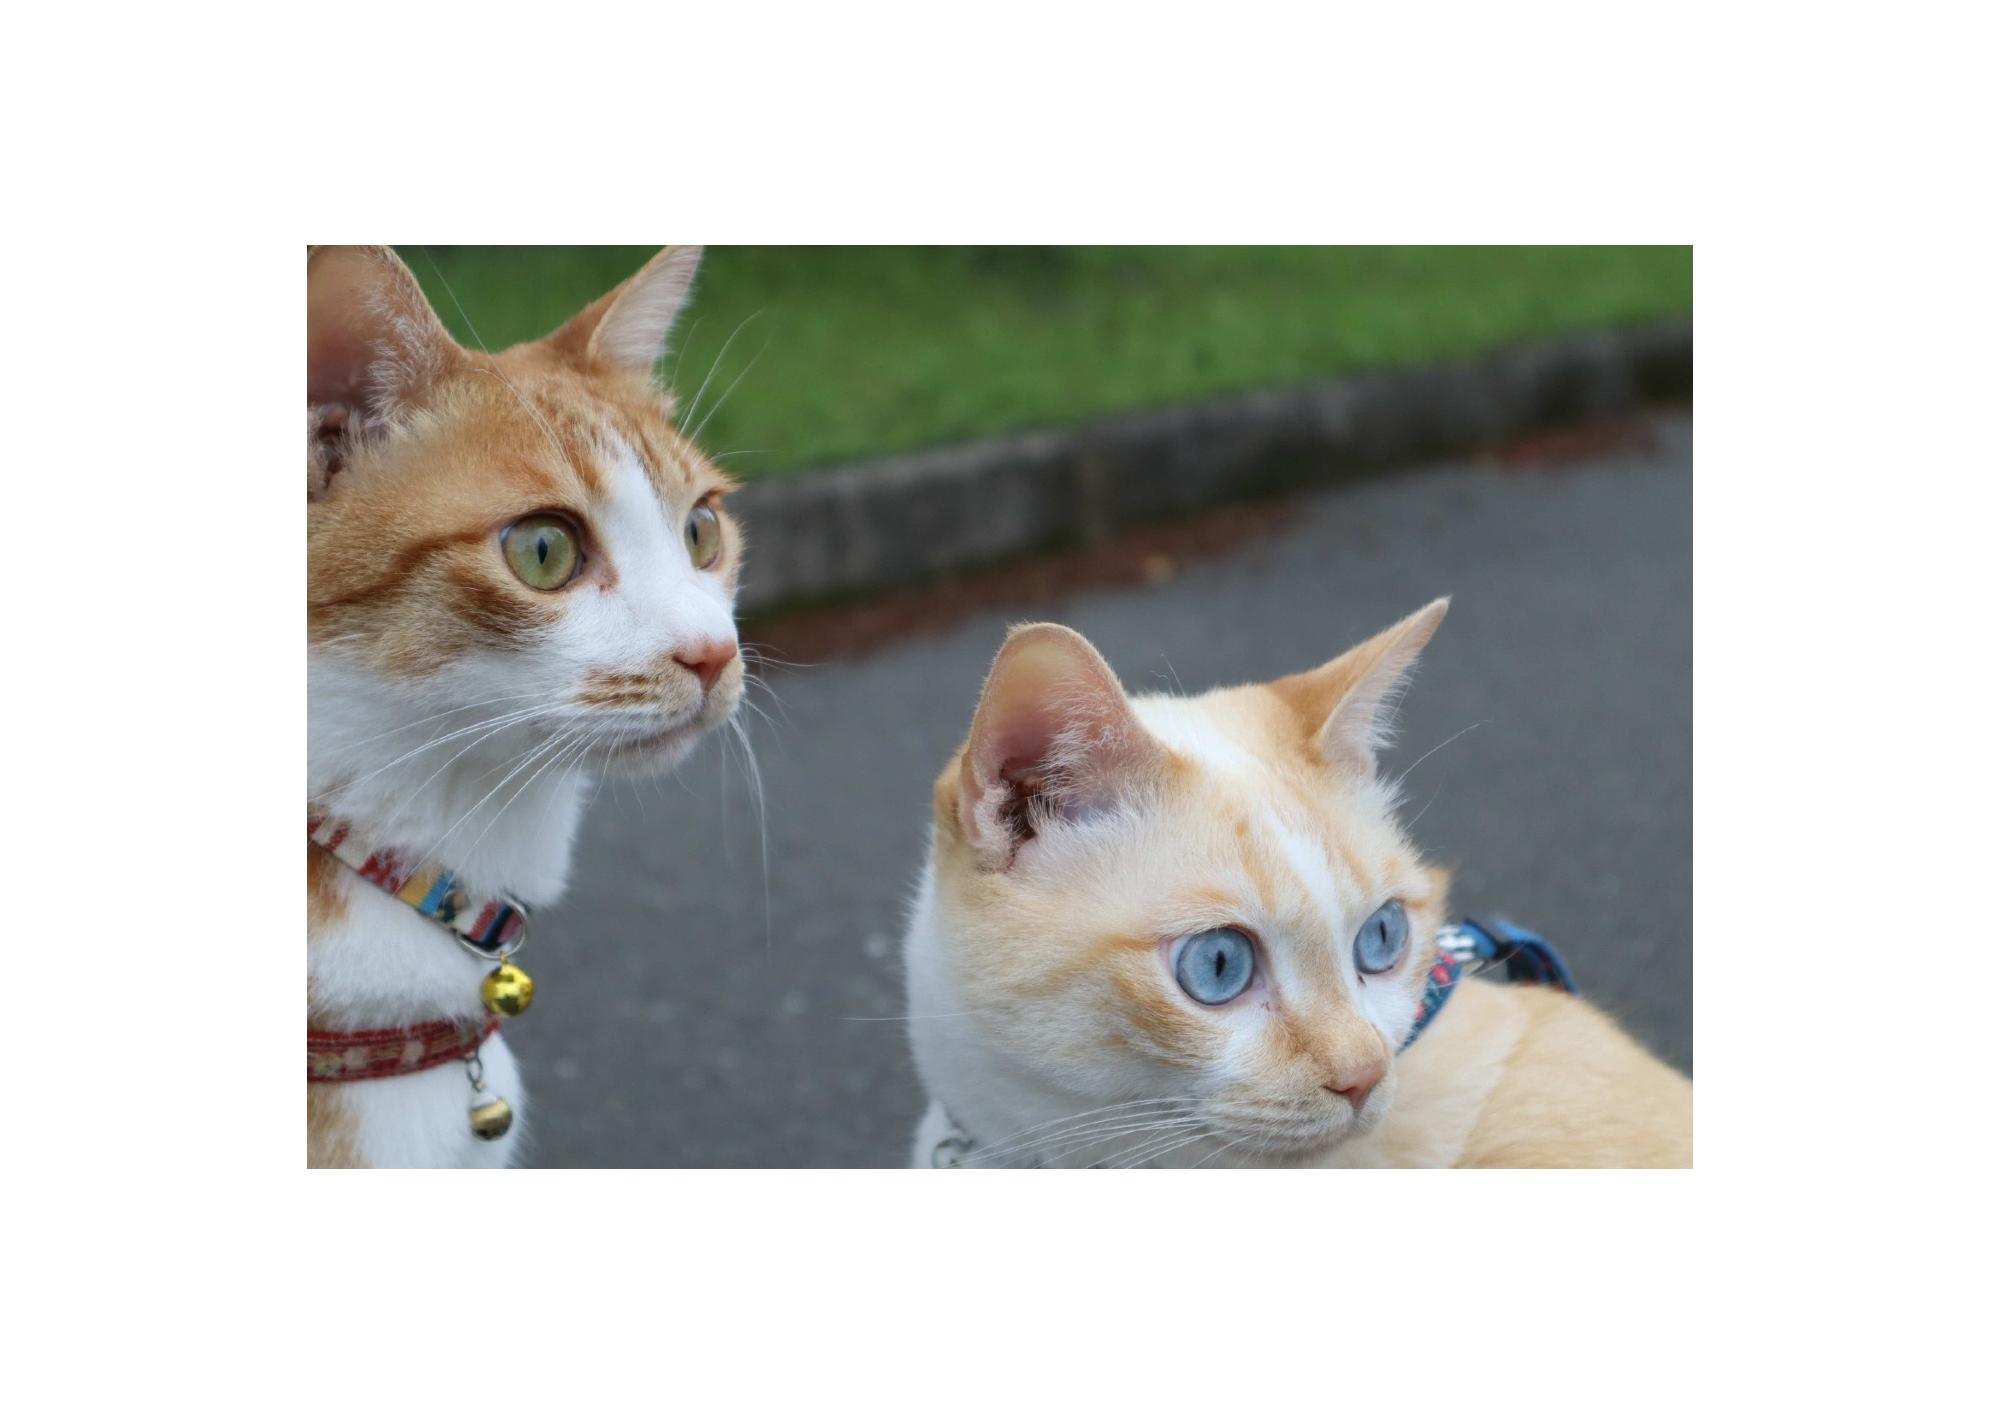 薄茶色の猫2匹が同じ方向を一緒に眺めている写真